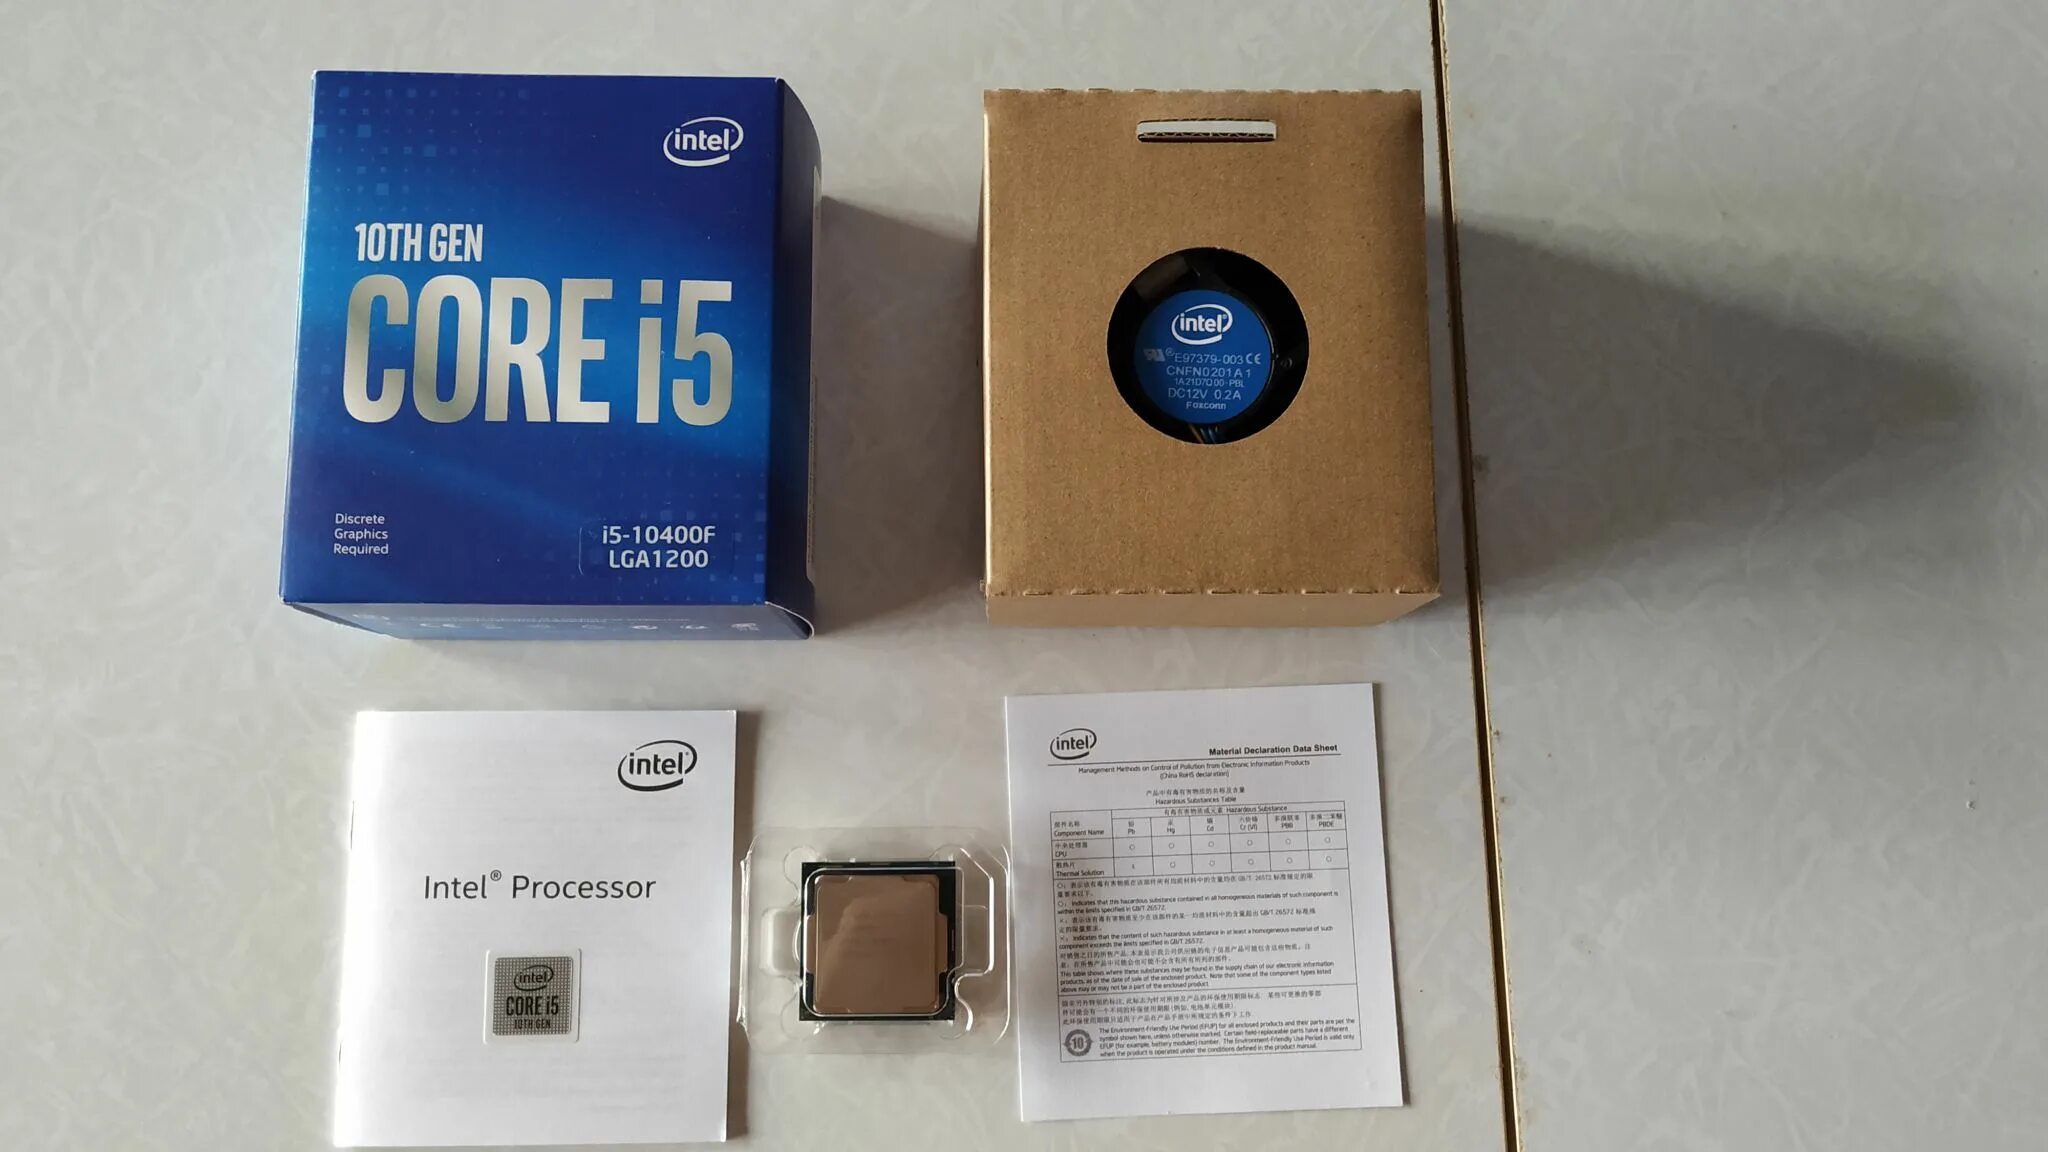 Intel Core i5-10400f. Процессор Intel Core i5-10400f Box. Процессор Intel Core i5 Comet Lake i5-10400f OEM. Intel Core i5 10400, LGA 1200, OEM.